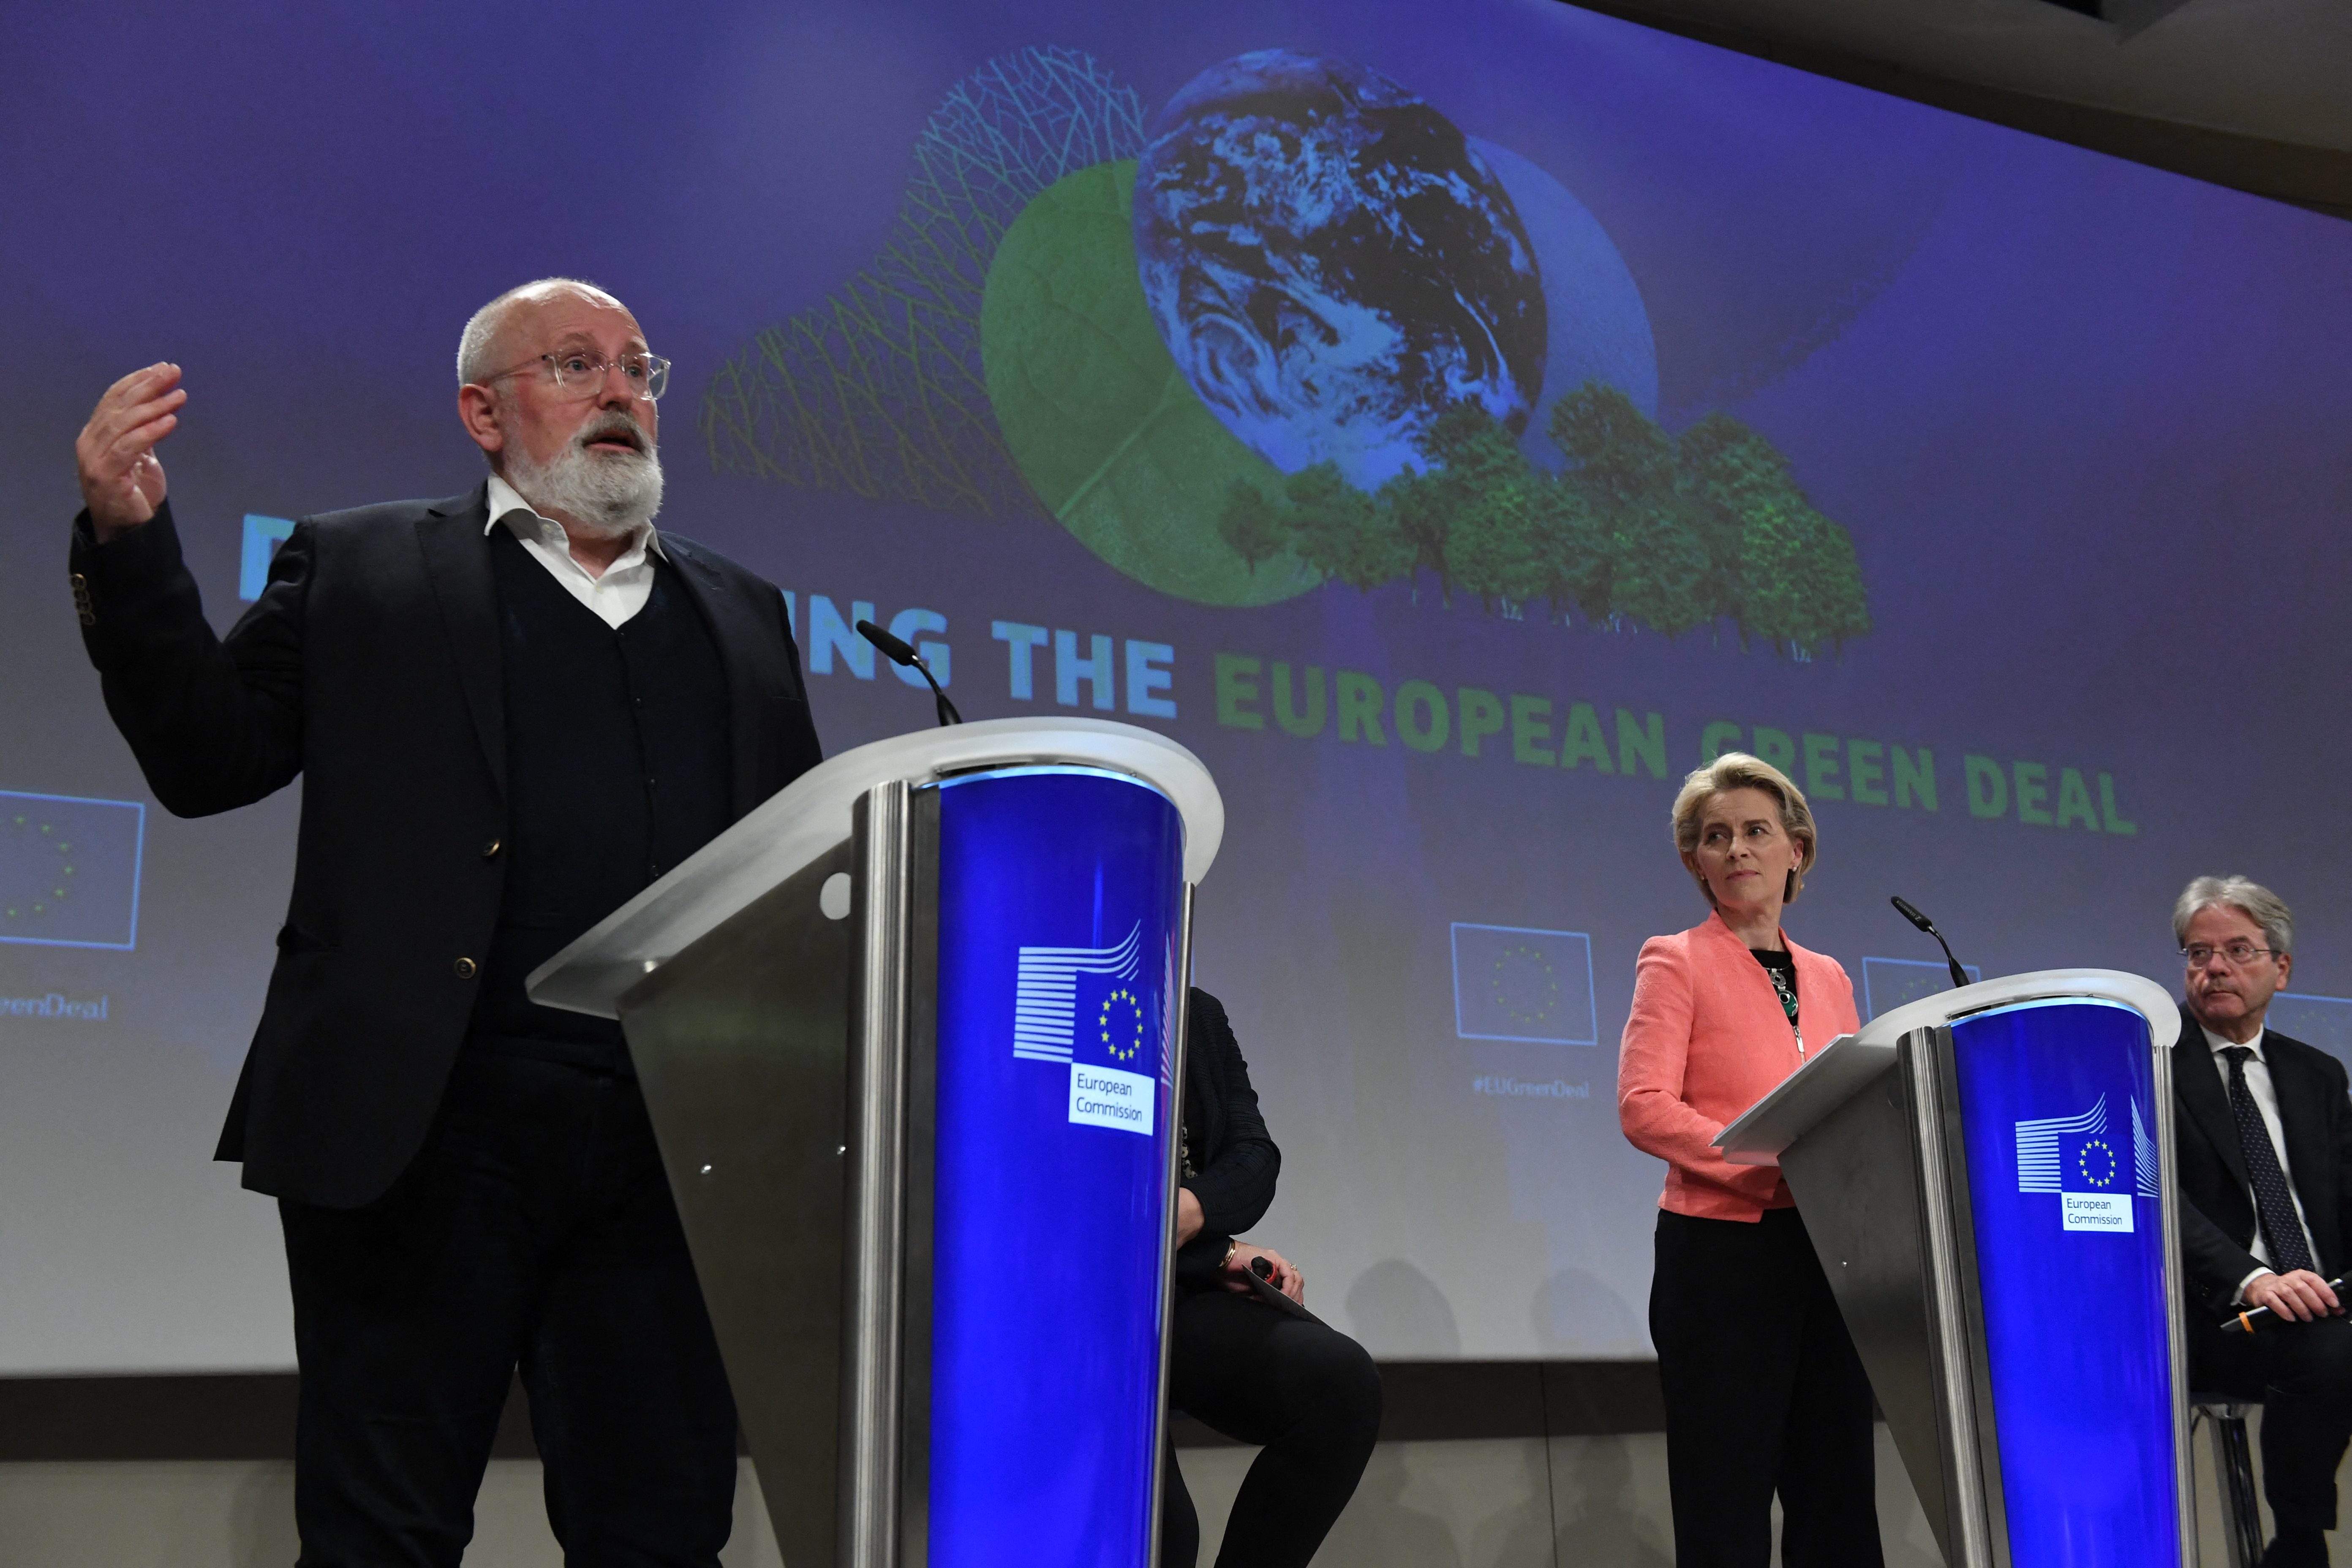 Kész megharcolni klímapolitikai javaslataiért az Európai Bizottság